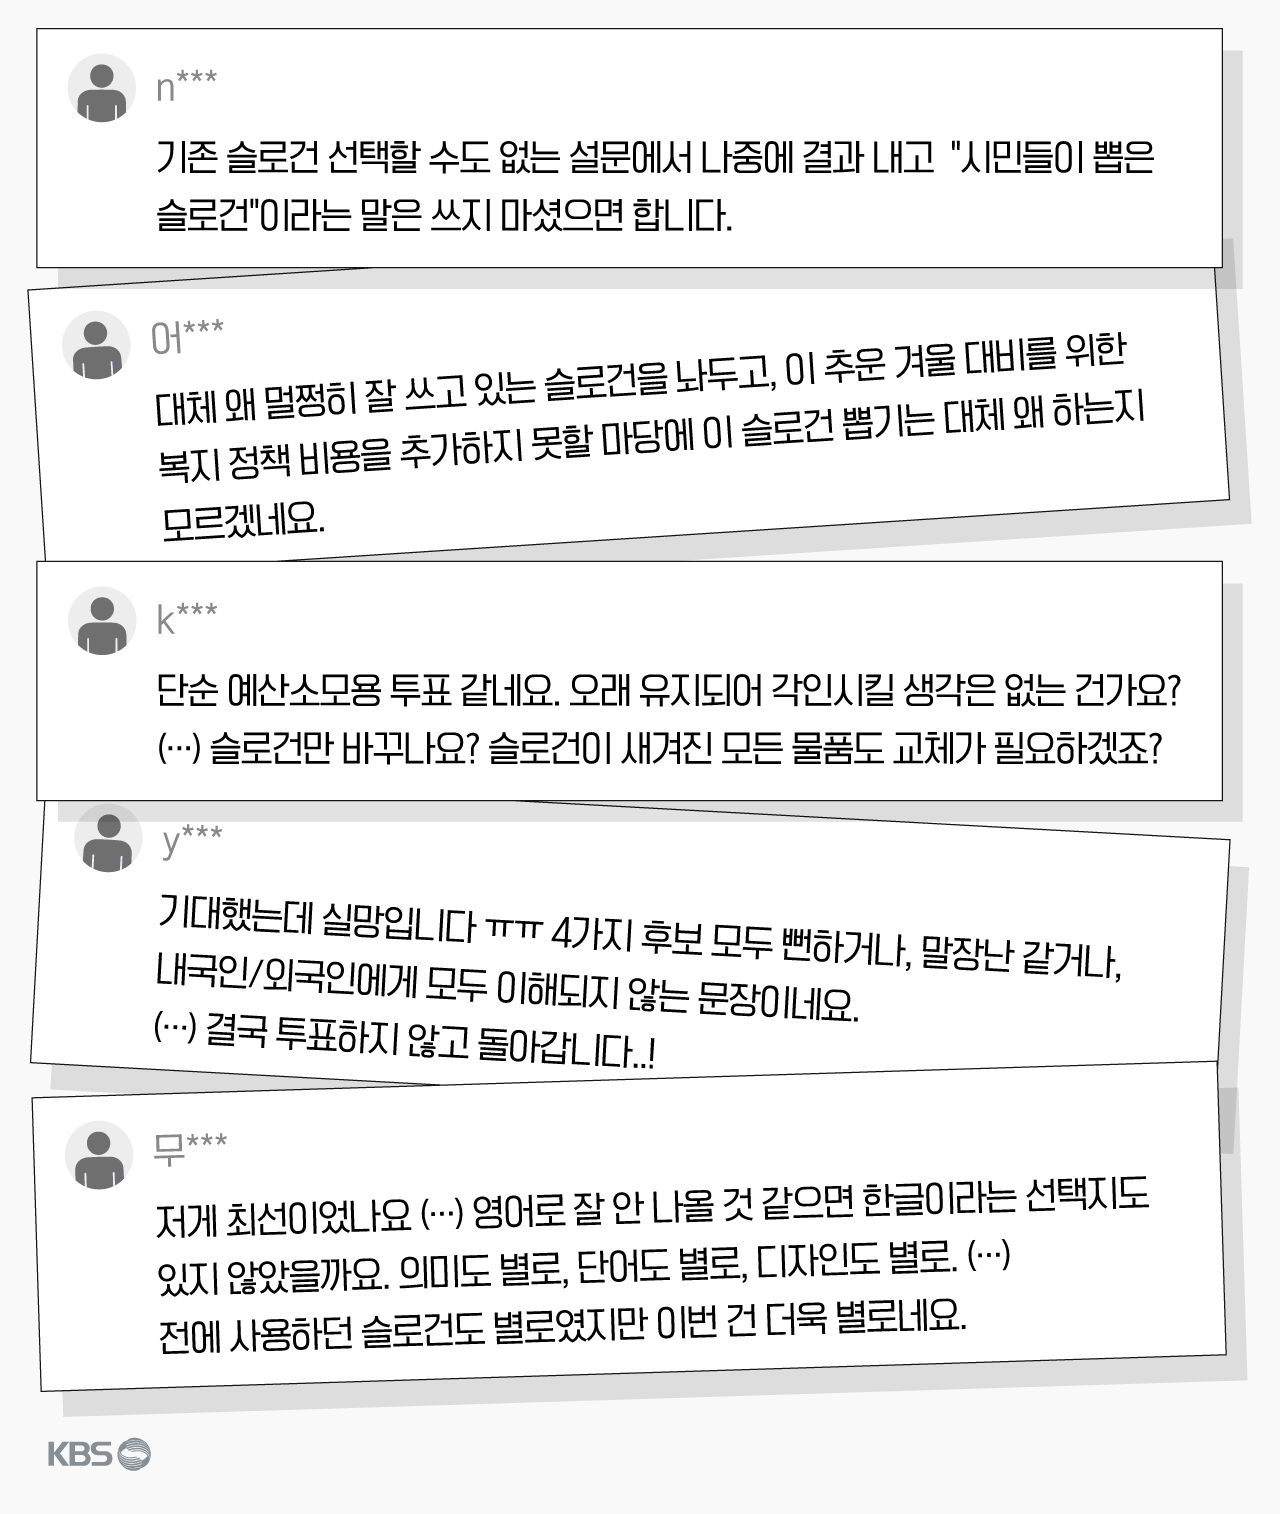 서울 브랜드 슬로건 시민 선호도 조사 인터넷 페이지 댓글에서 재구성